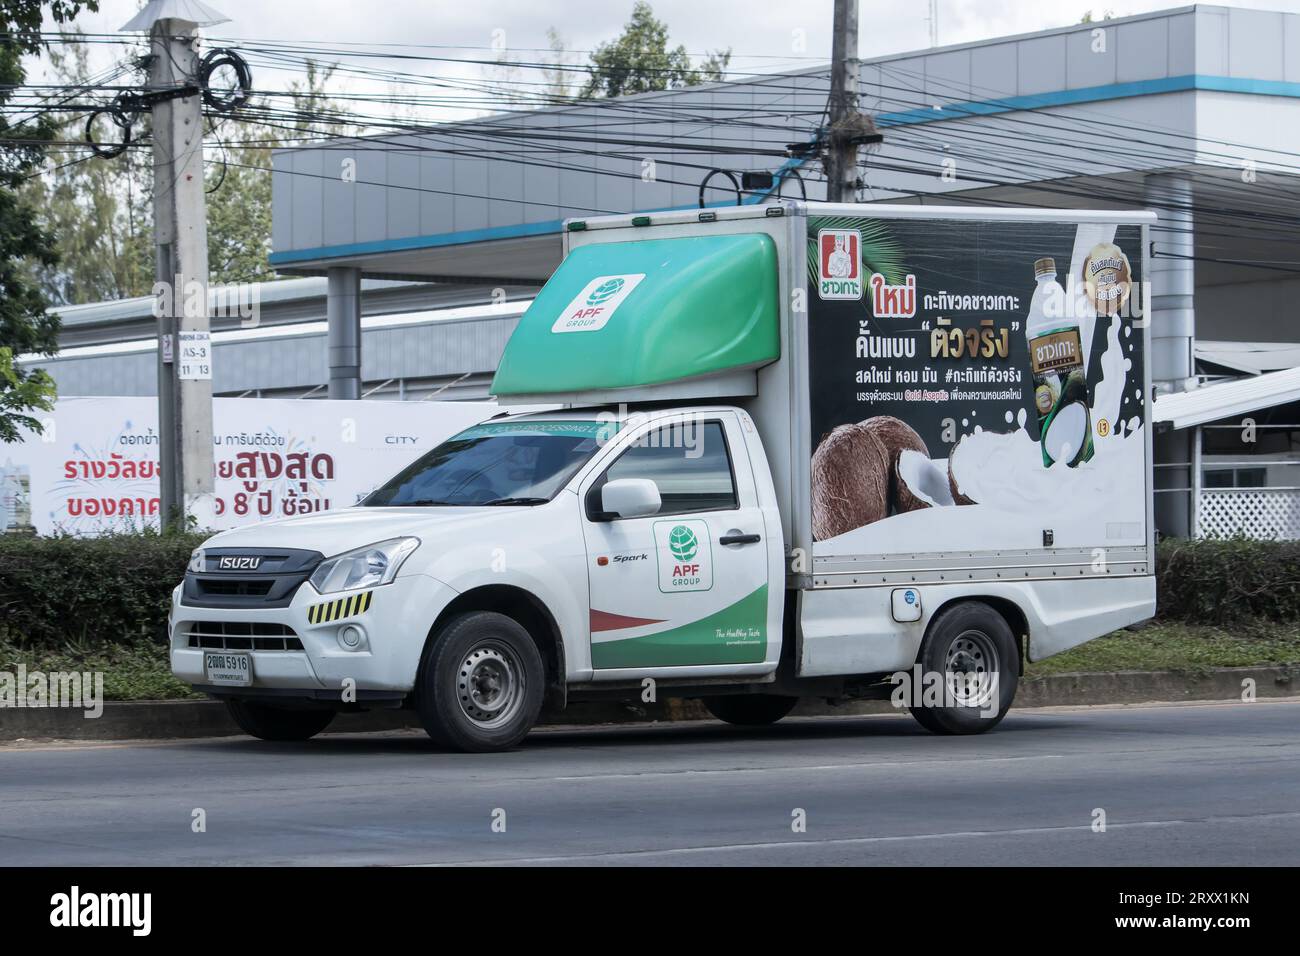 Chiangmai, Thaïlande - juin 29 2023 : camion porte-conteneurs de la société alimentaire APF Amphon. Photo à la route n ° 121 à environ 8 km du centre-ville de Chiangmai thaïlande. Banque D'Images